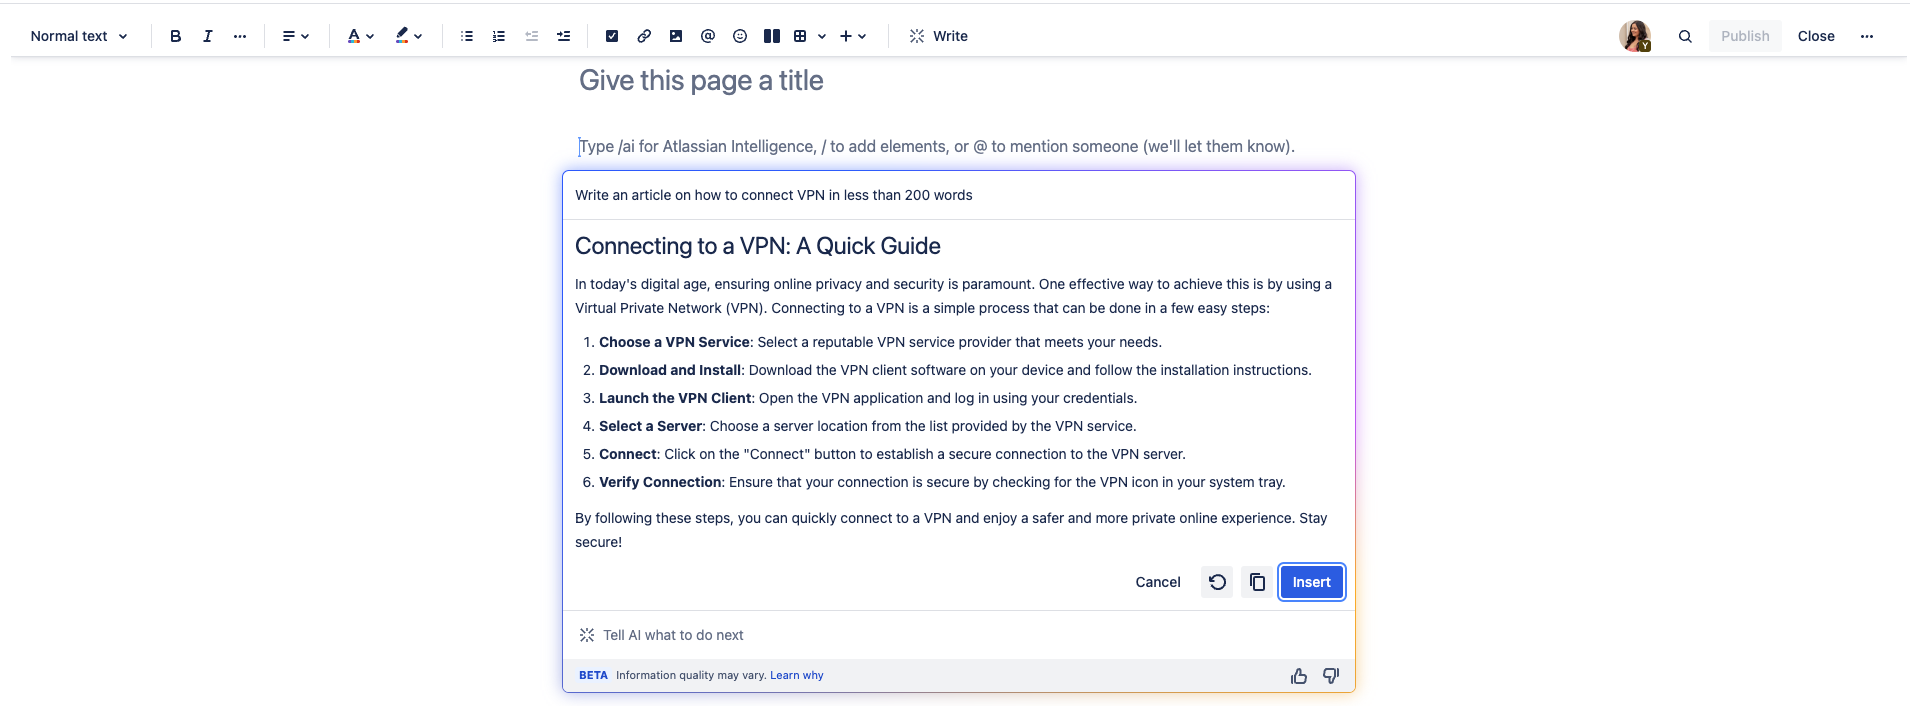 VPN の接続方法に関するナレッジ ベース記事のコンテンツをドラフトする